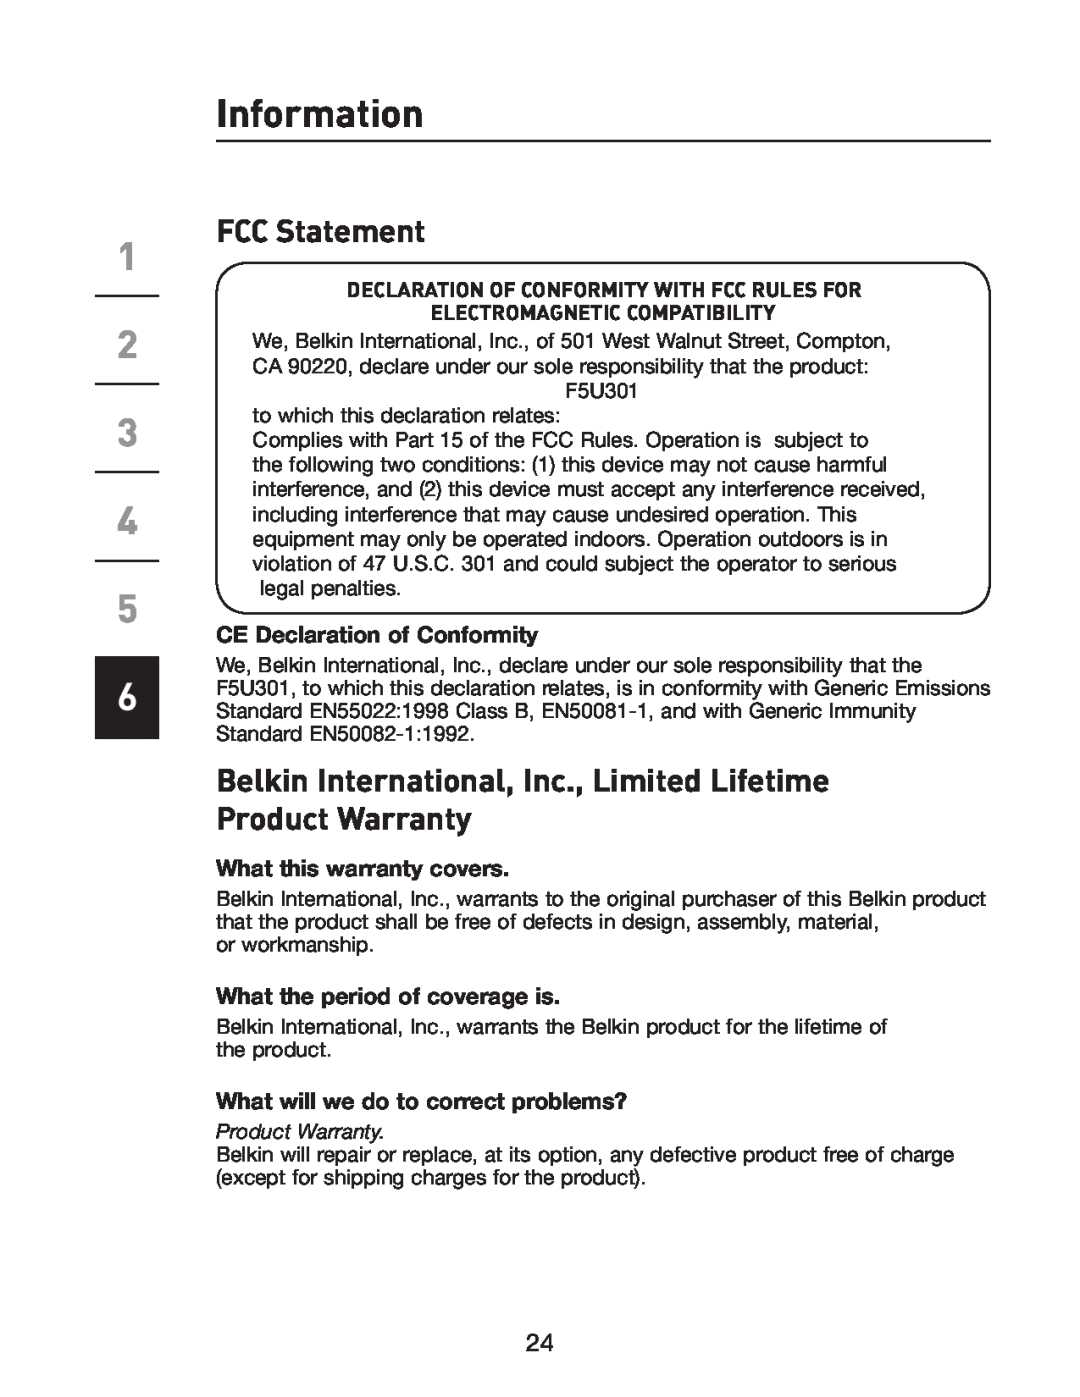 Belkin F5U301 user manual Information, FCC Statement, Belkin International, Inc., Limited Lifetime Product Warranty 